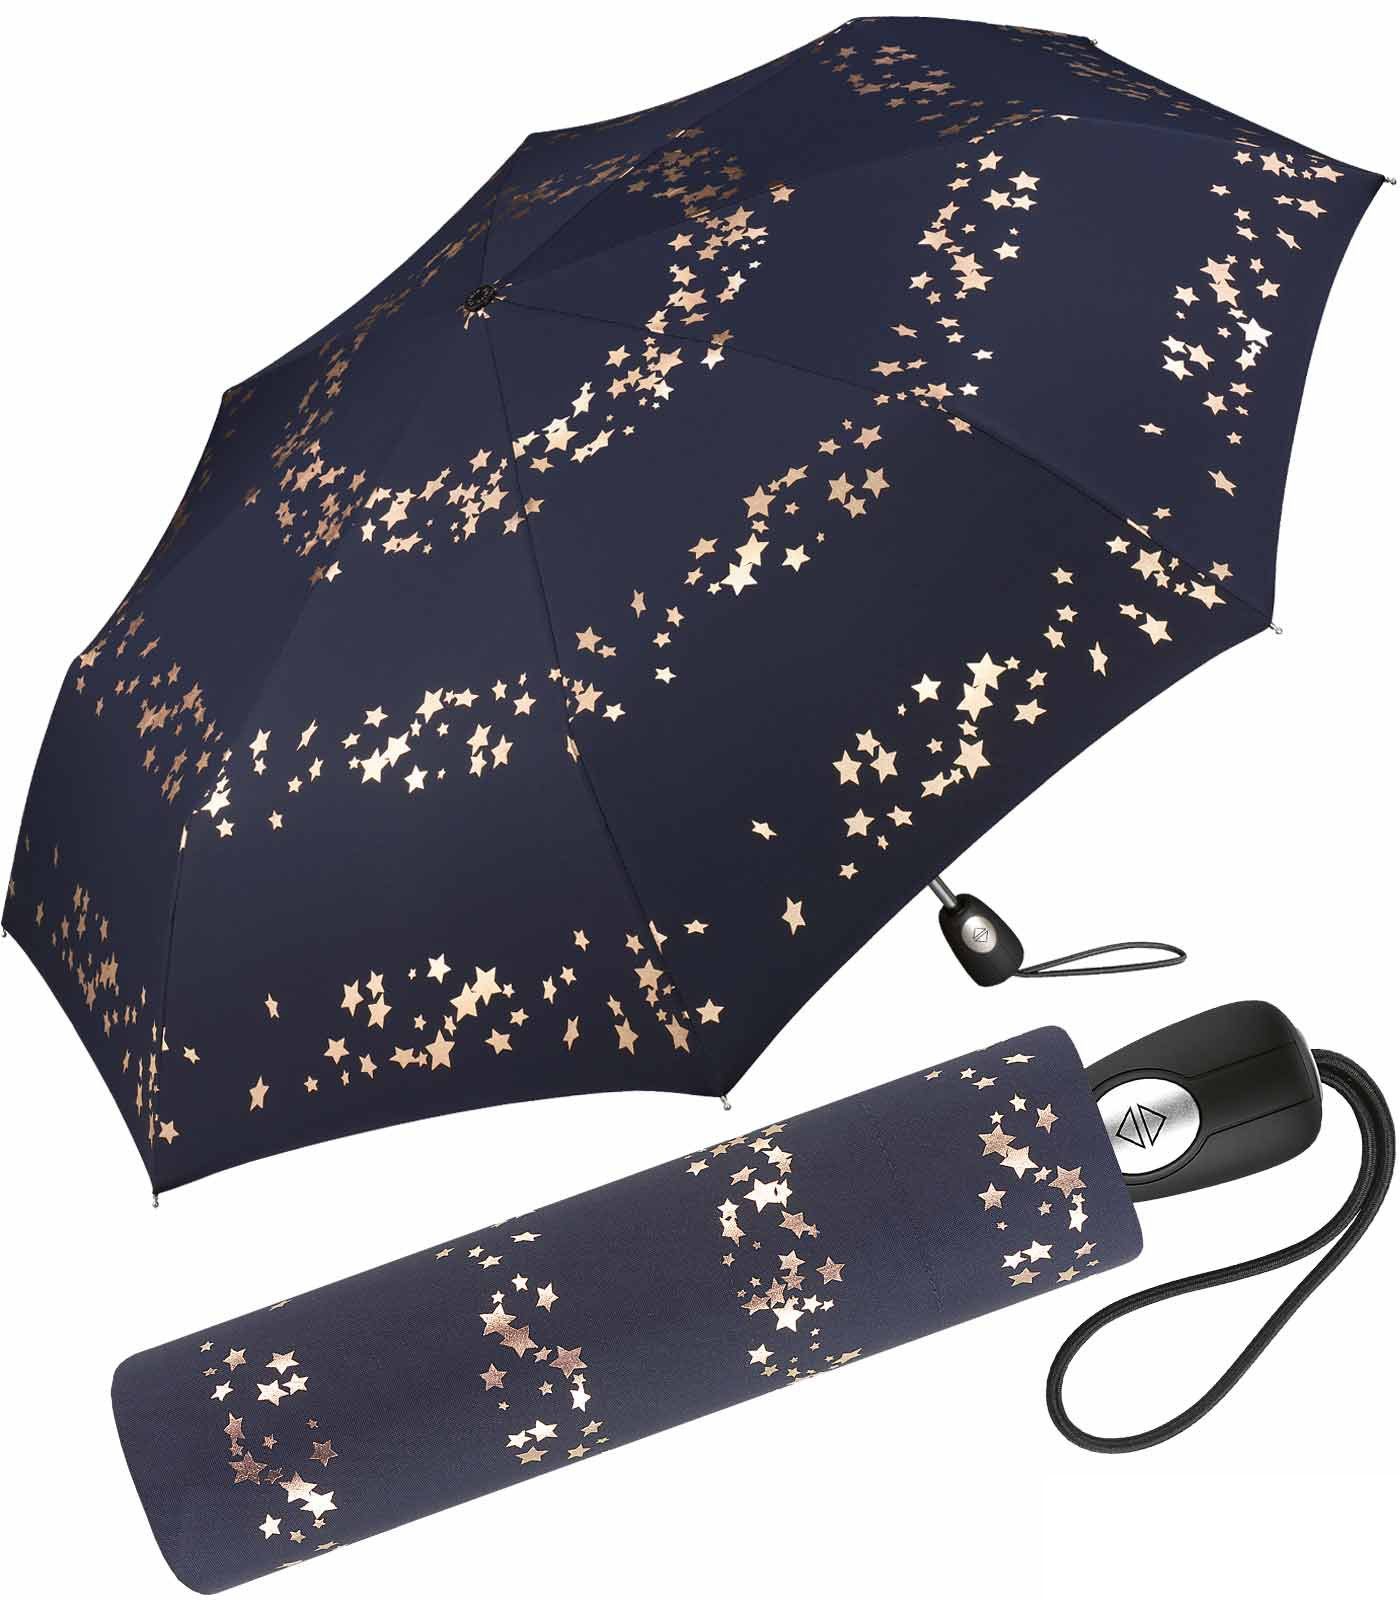 Pierre Cardin Taschenregenschirm schöner Damen-Regenschirm mit Auf-Zu-Automatik, traumhafte Sterne in verspieltem Design blau-rotgold